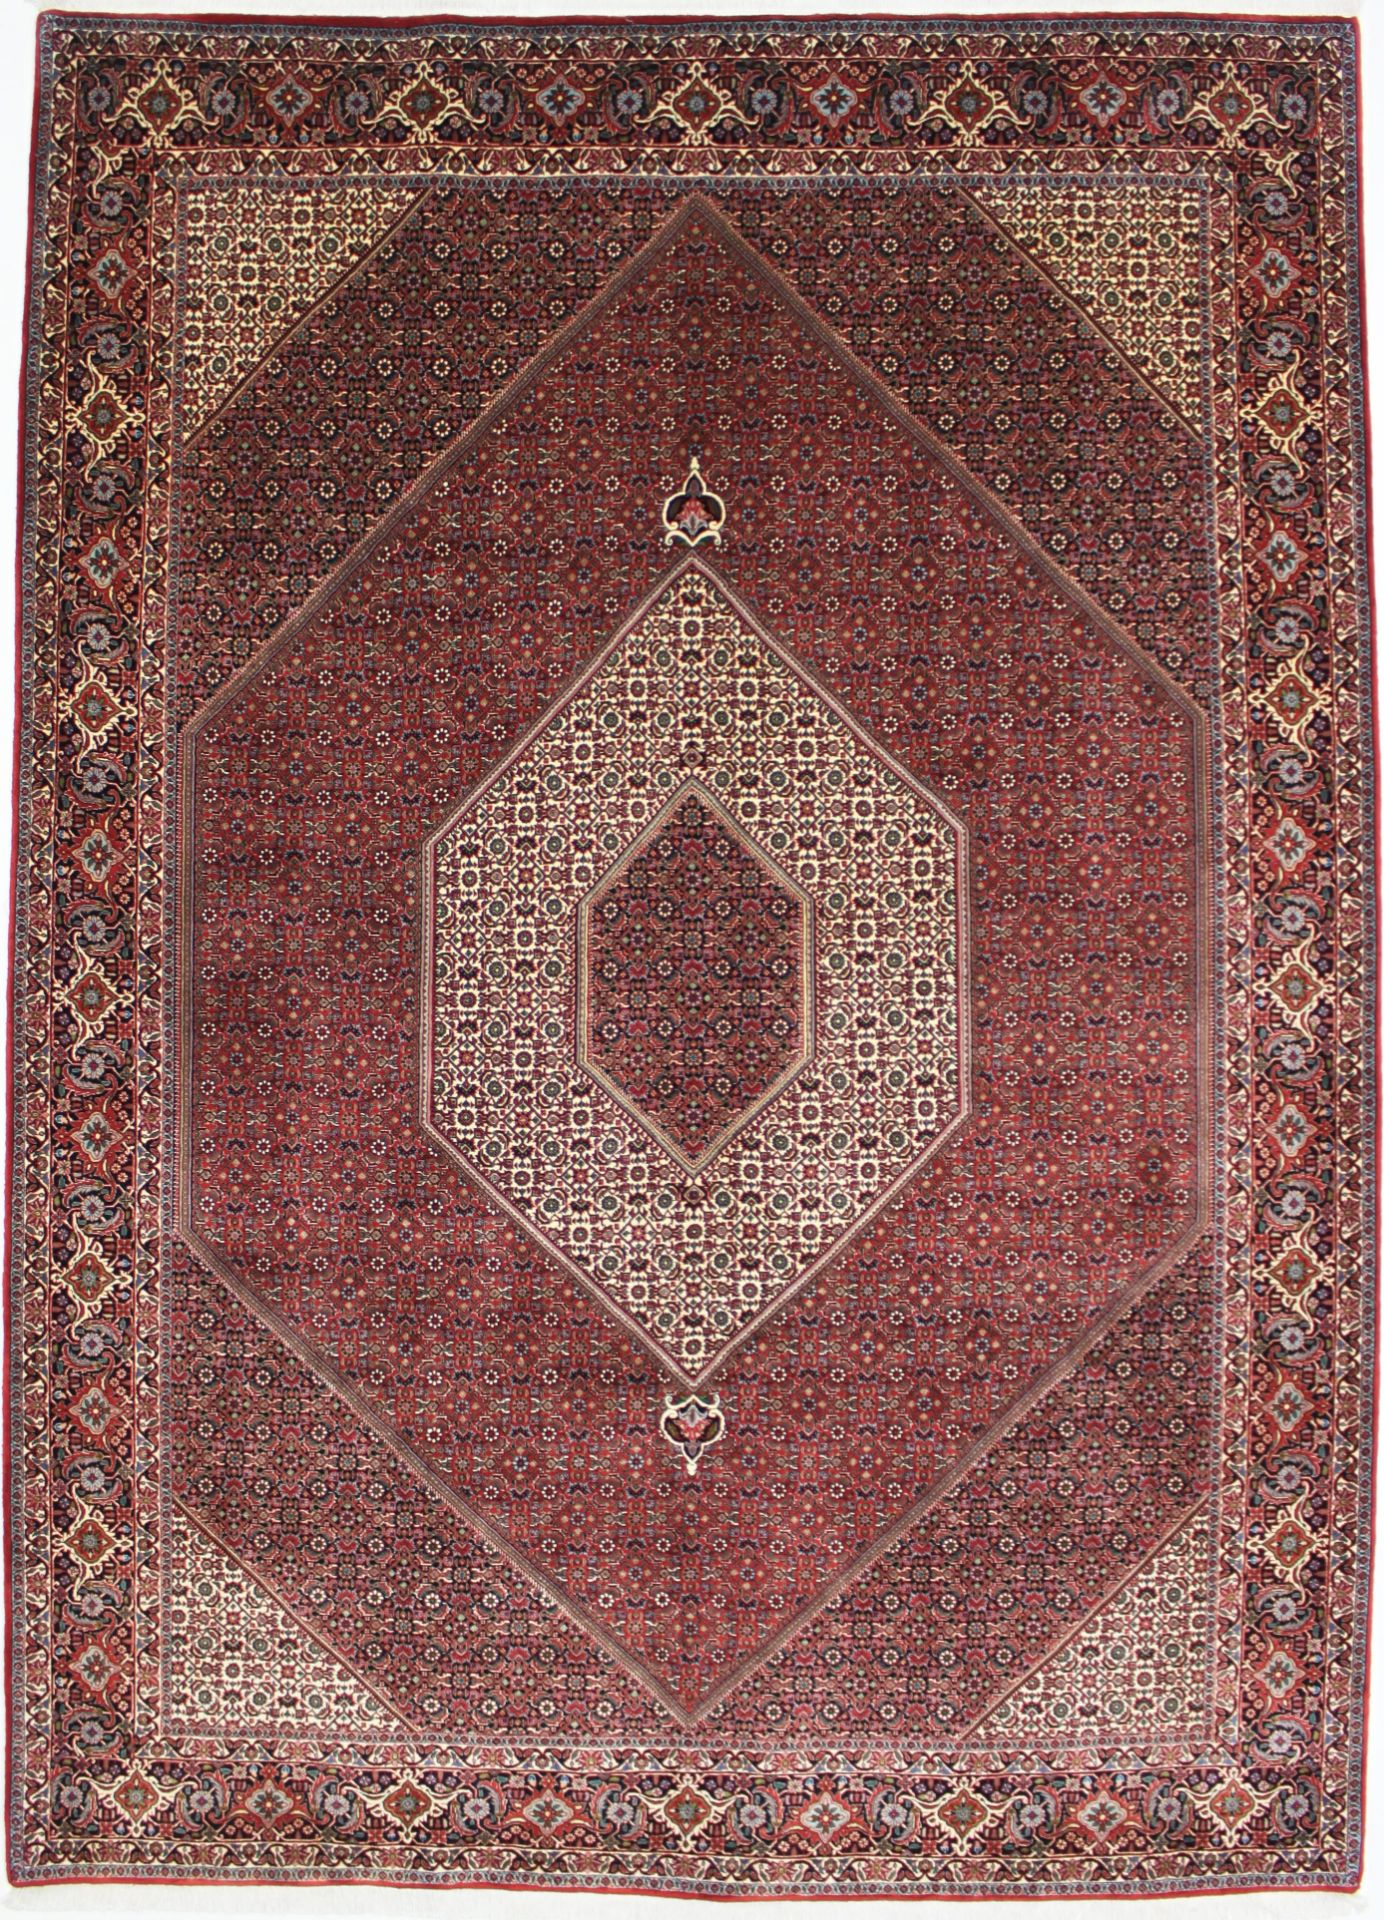 BIDJAR Iran - 351 x 253 cm - Bild 2 aus 6